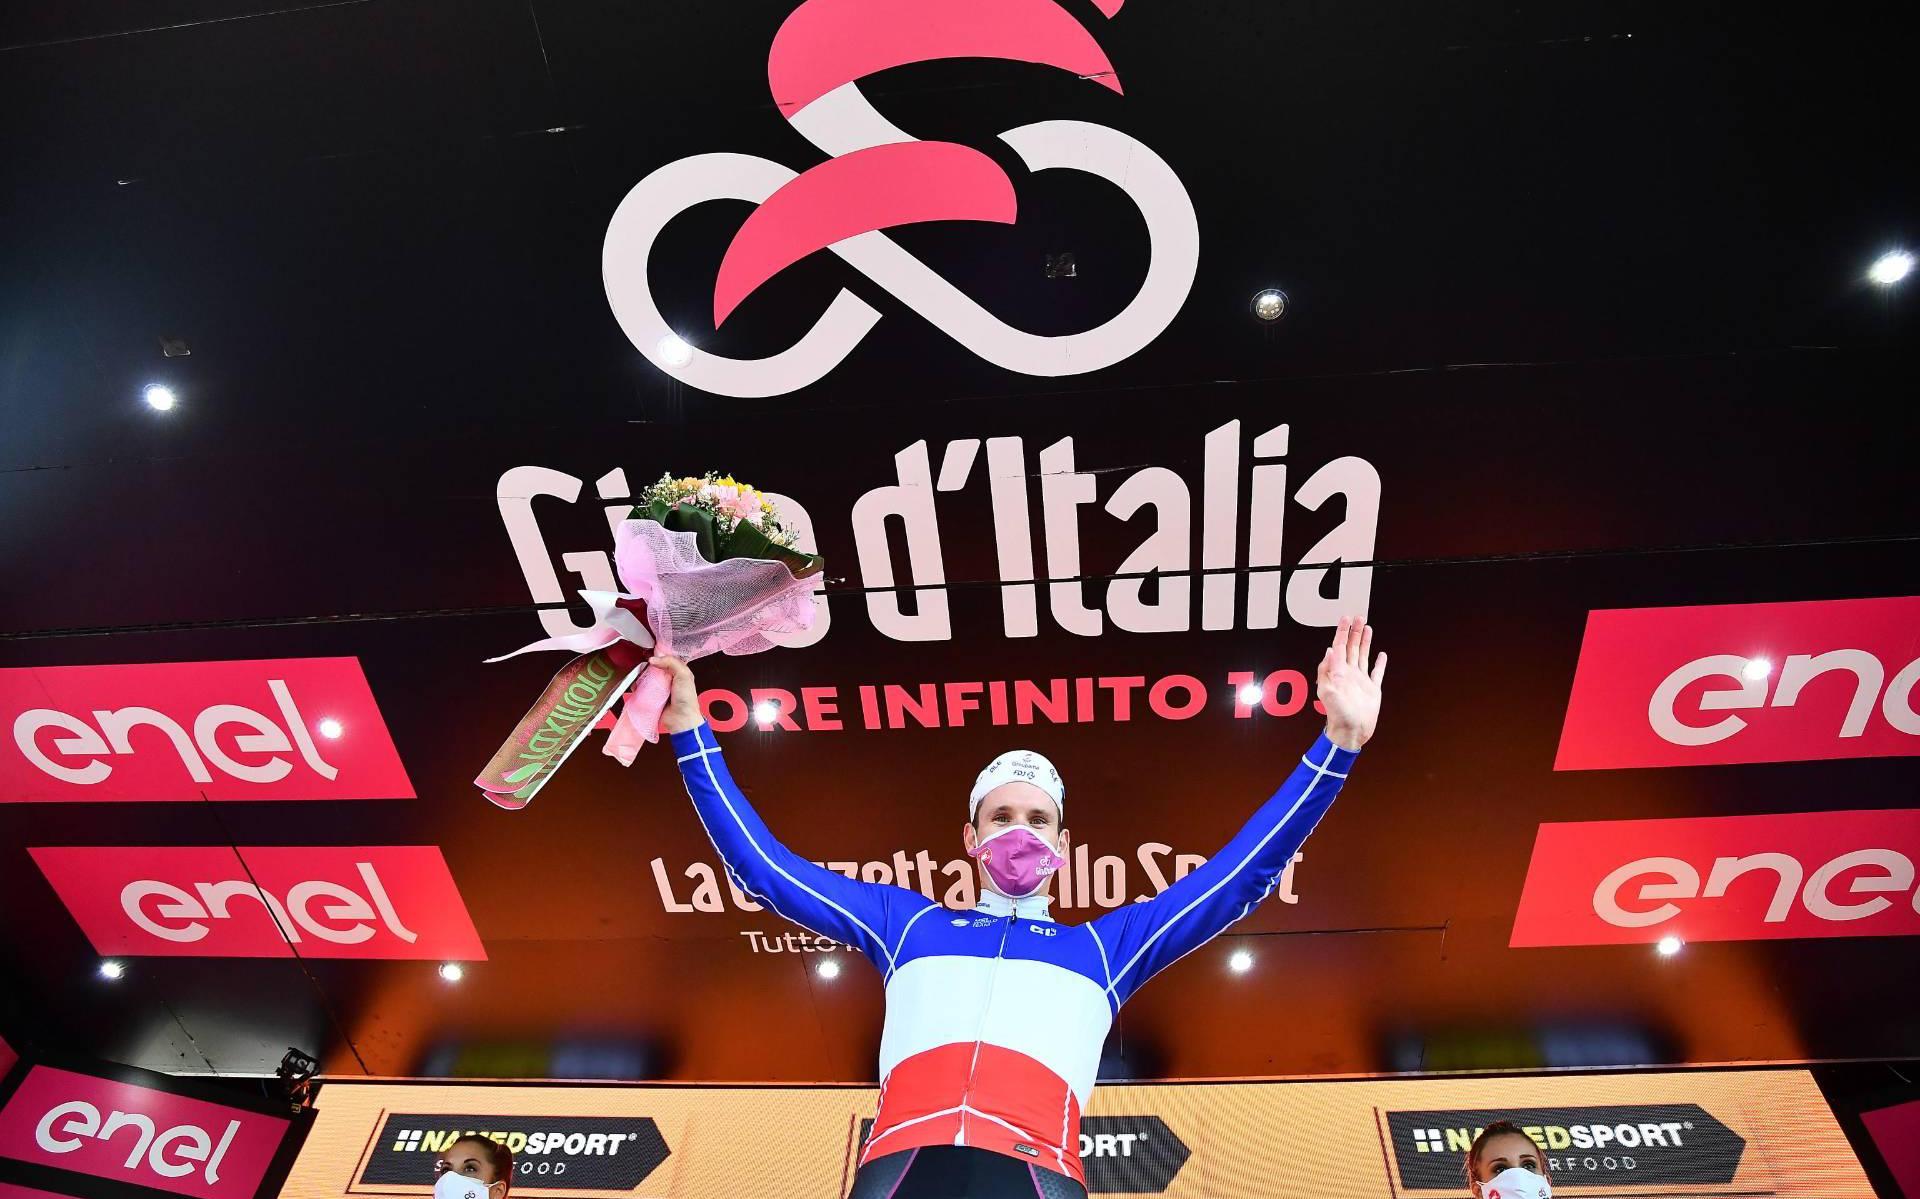 Démare verbreekt bij derde ritzege in Giro ook snelheidsrecord